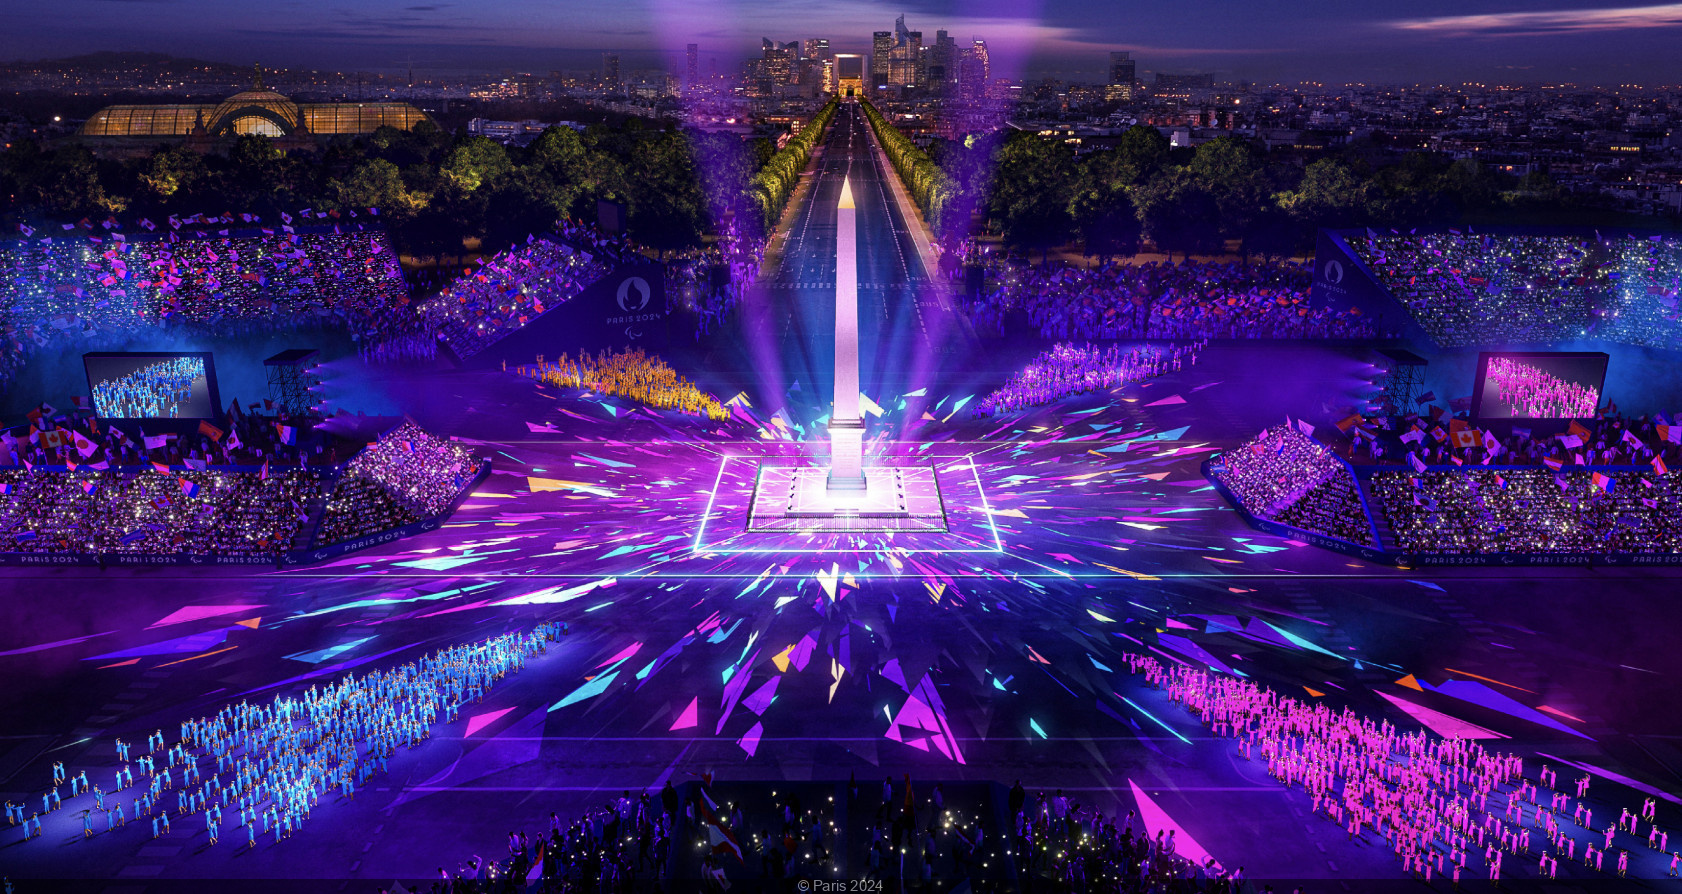 Olympics: Problems facing Paris 2024 – DW – 10/27/2023